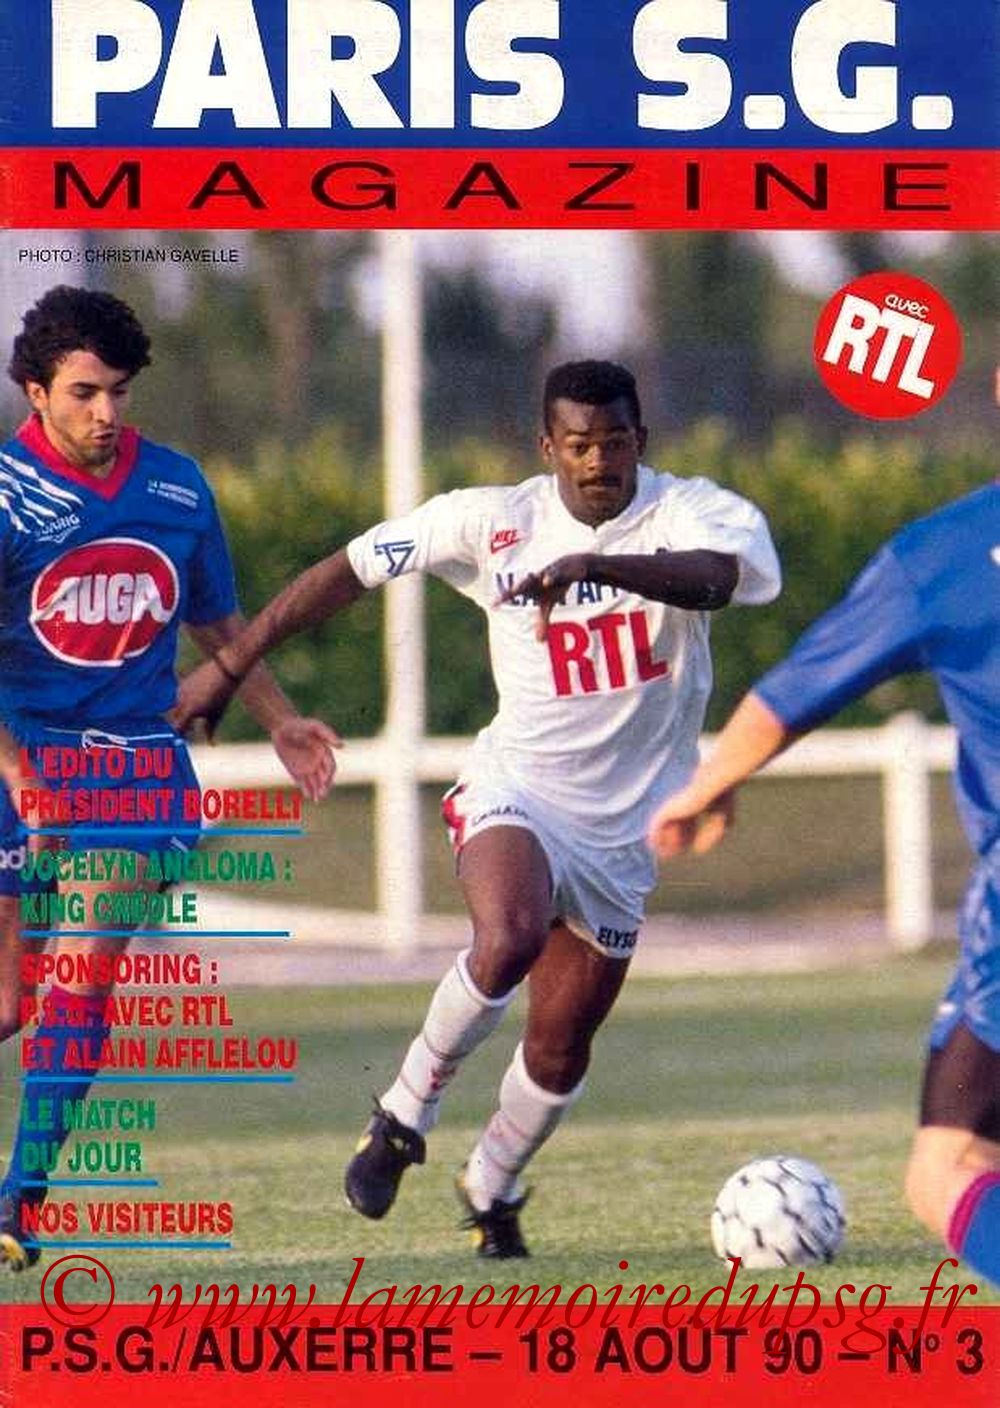 1990-08-18  PSG-Auxerre (5ème D1, Paris SG Magazine N°3)